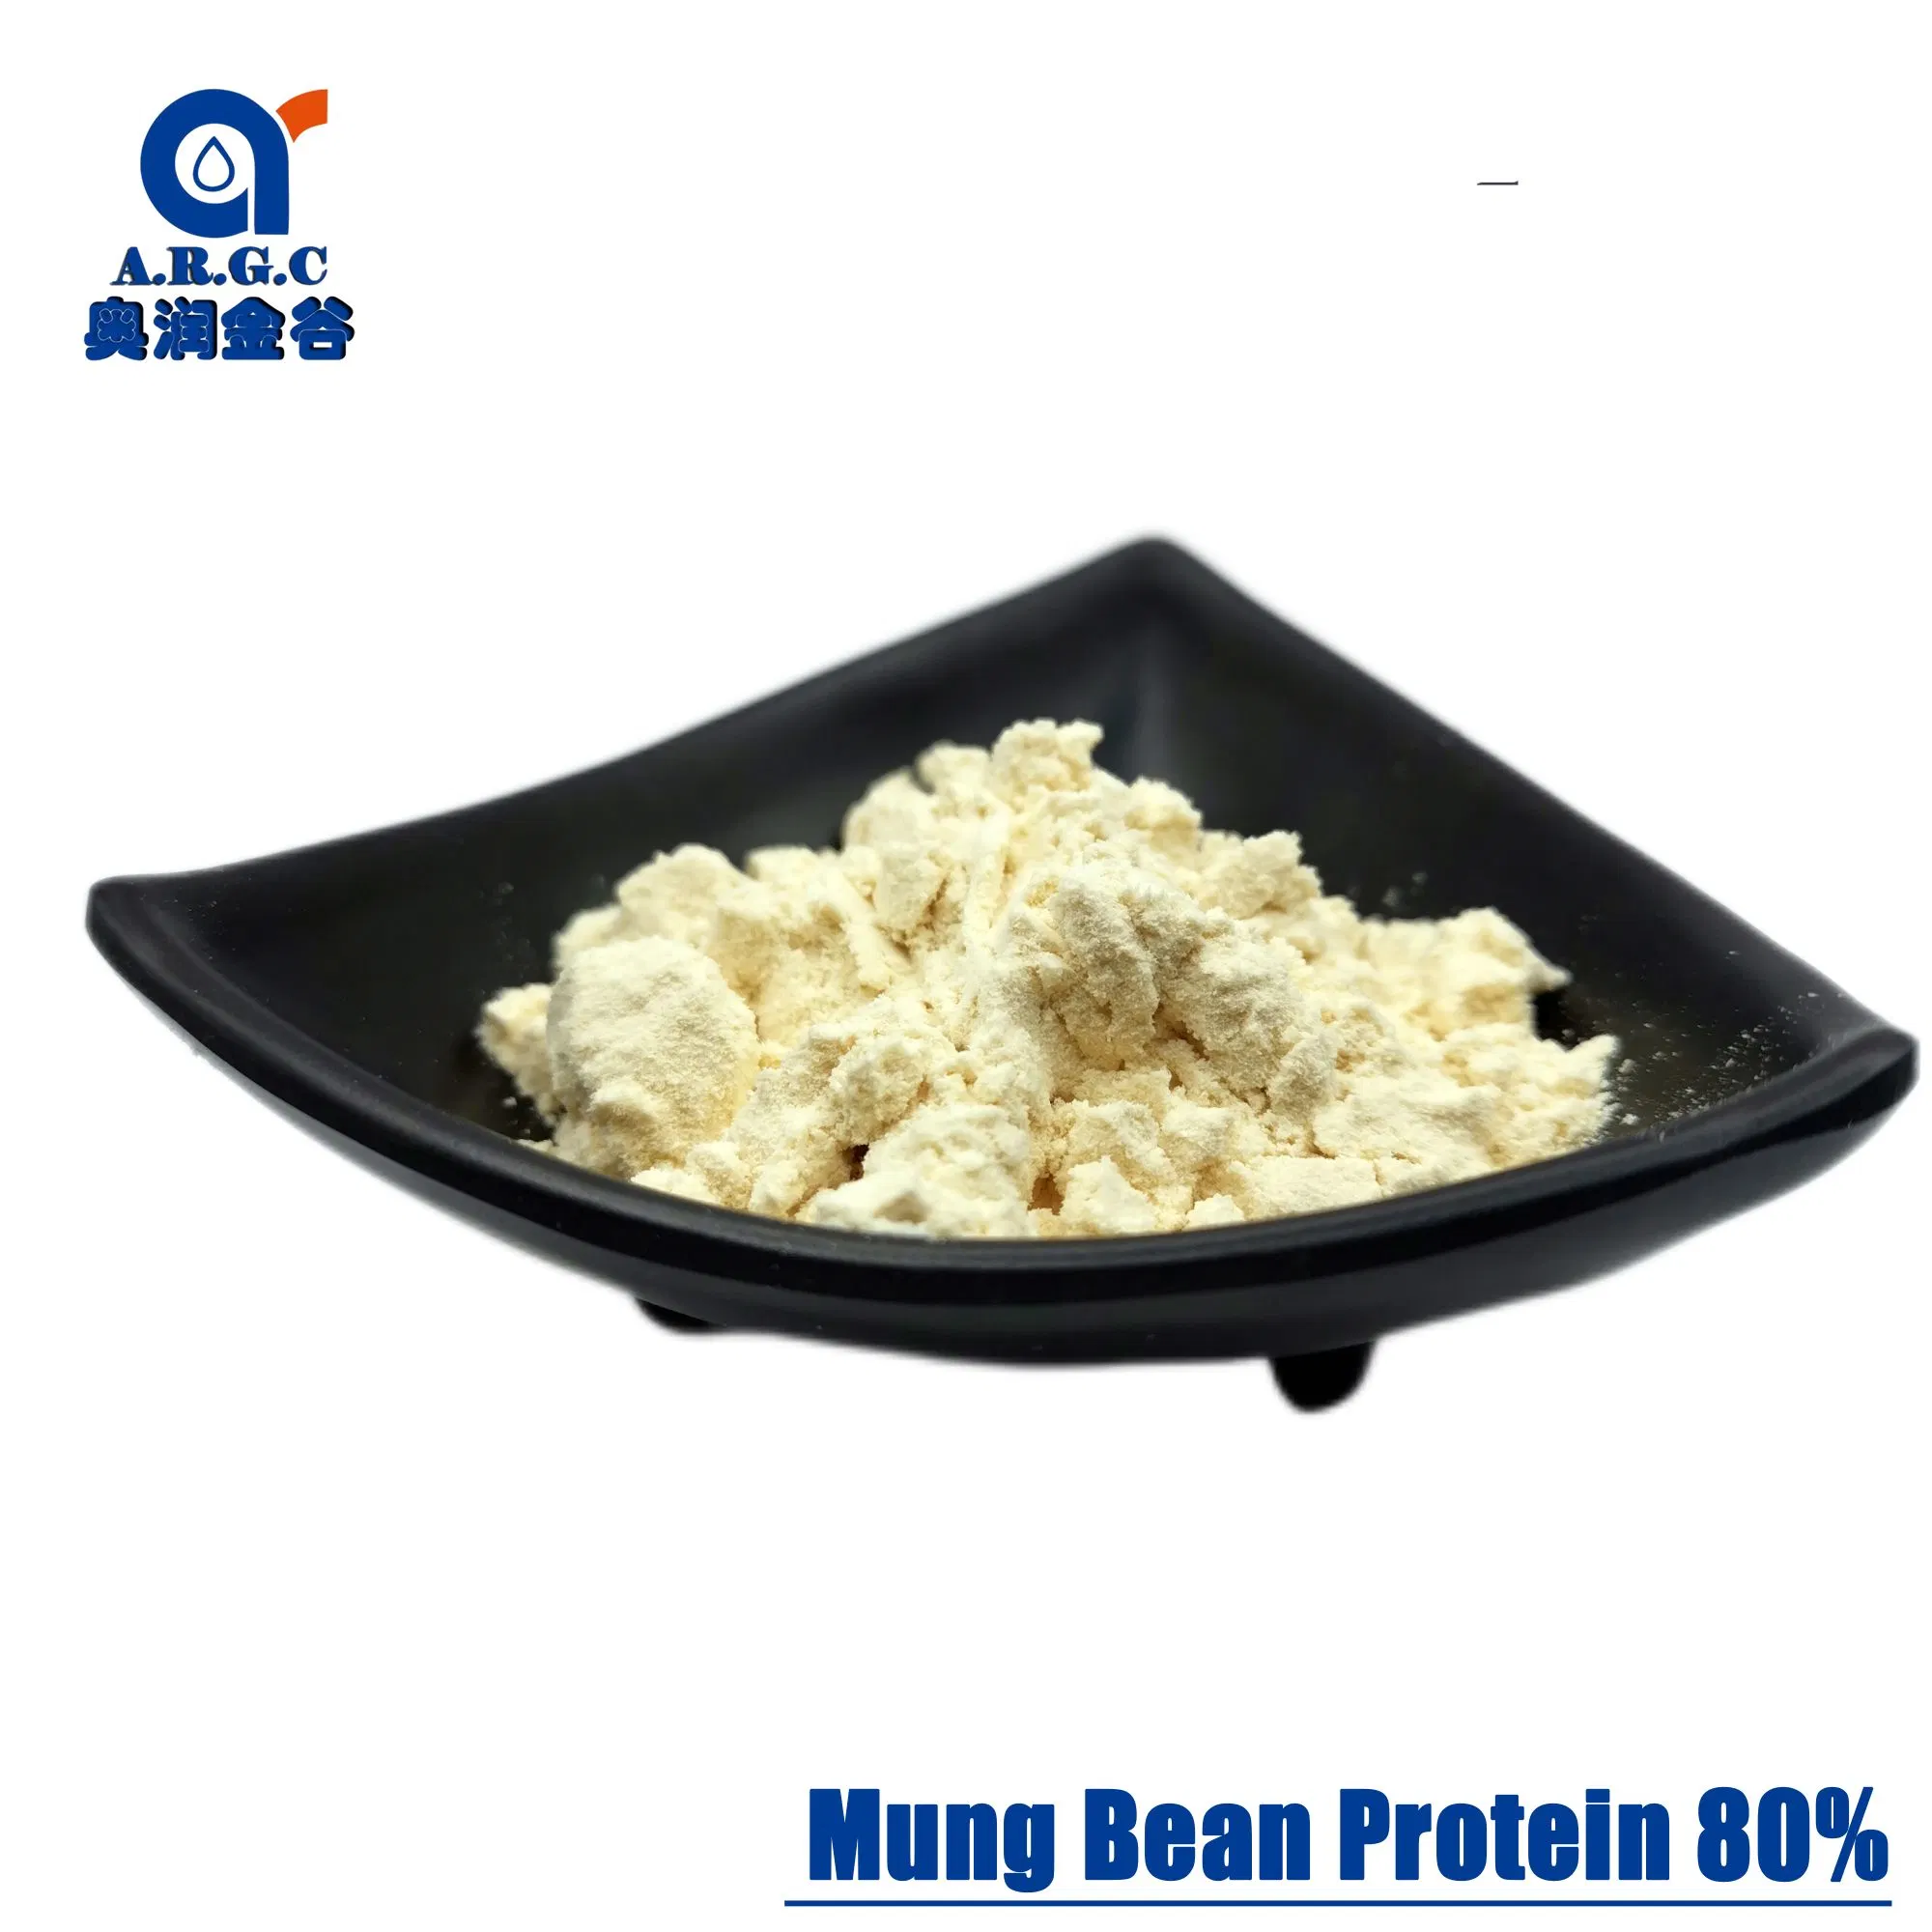 Food Supplement Plant Protein Powder, Organic Mung Bean Protein Powder